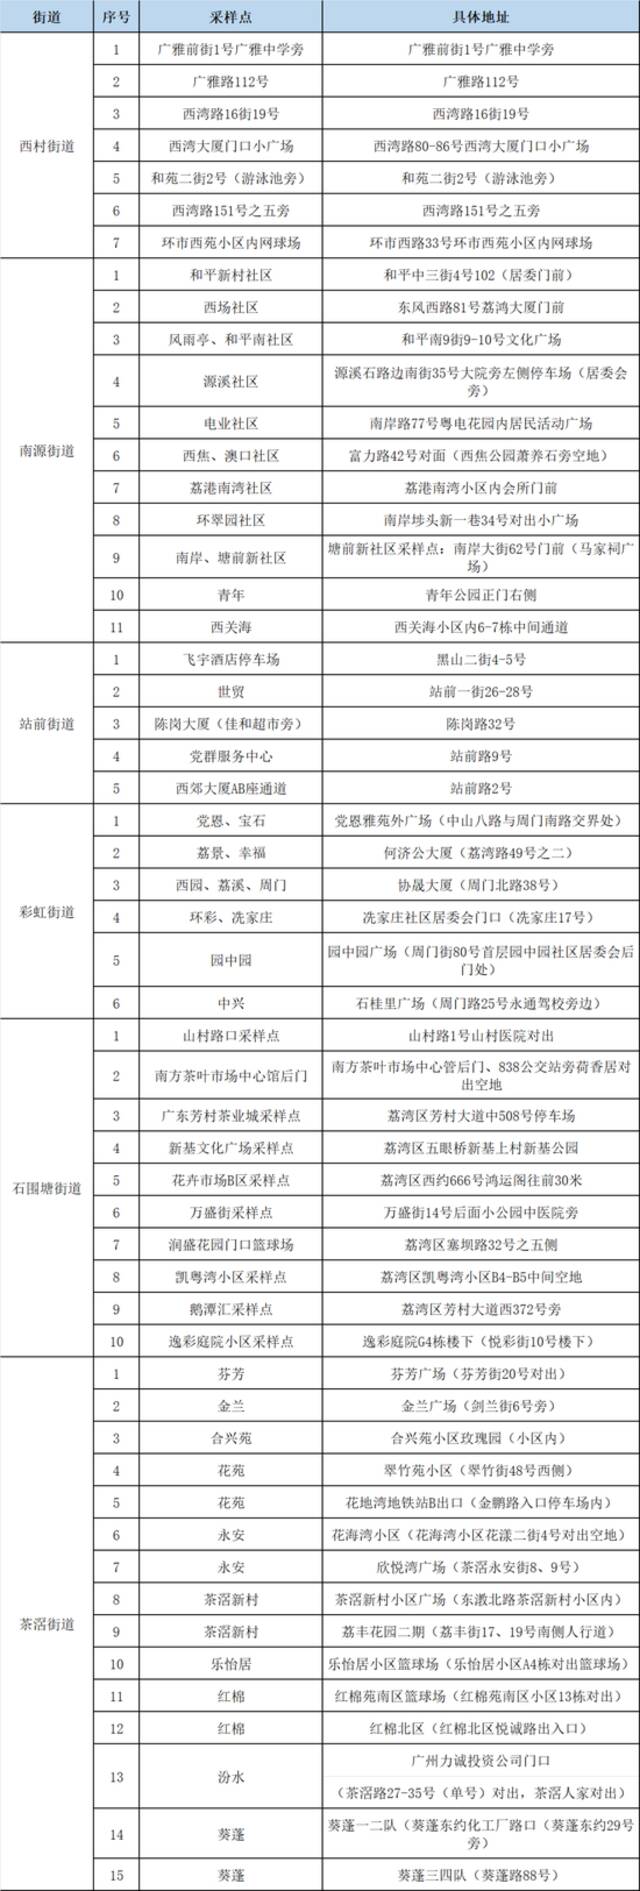 广州市荔湾区西村、南源、站前、彩虹、石围塘、茶滘街道进行全员核酸检测